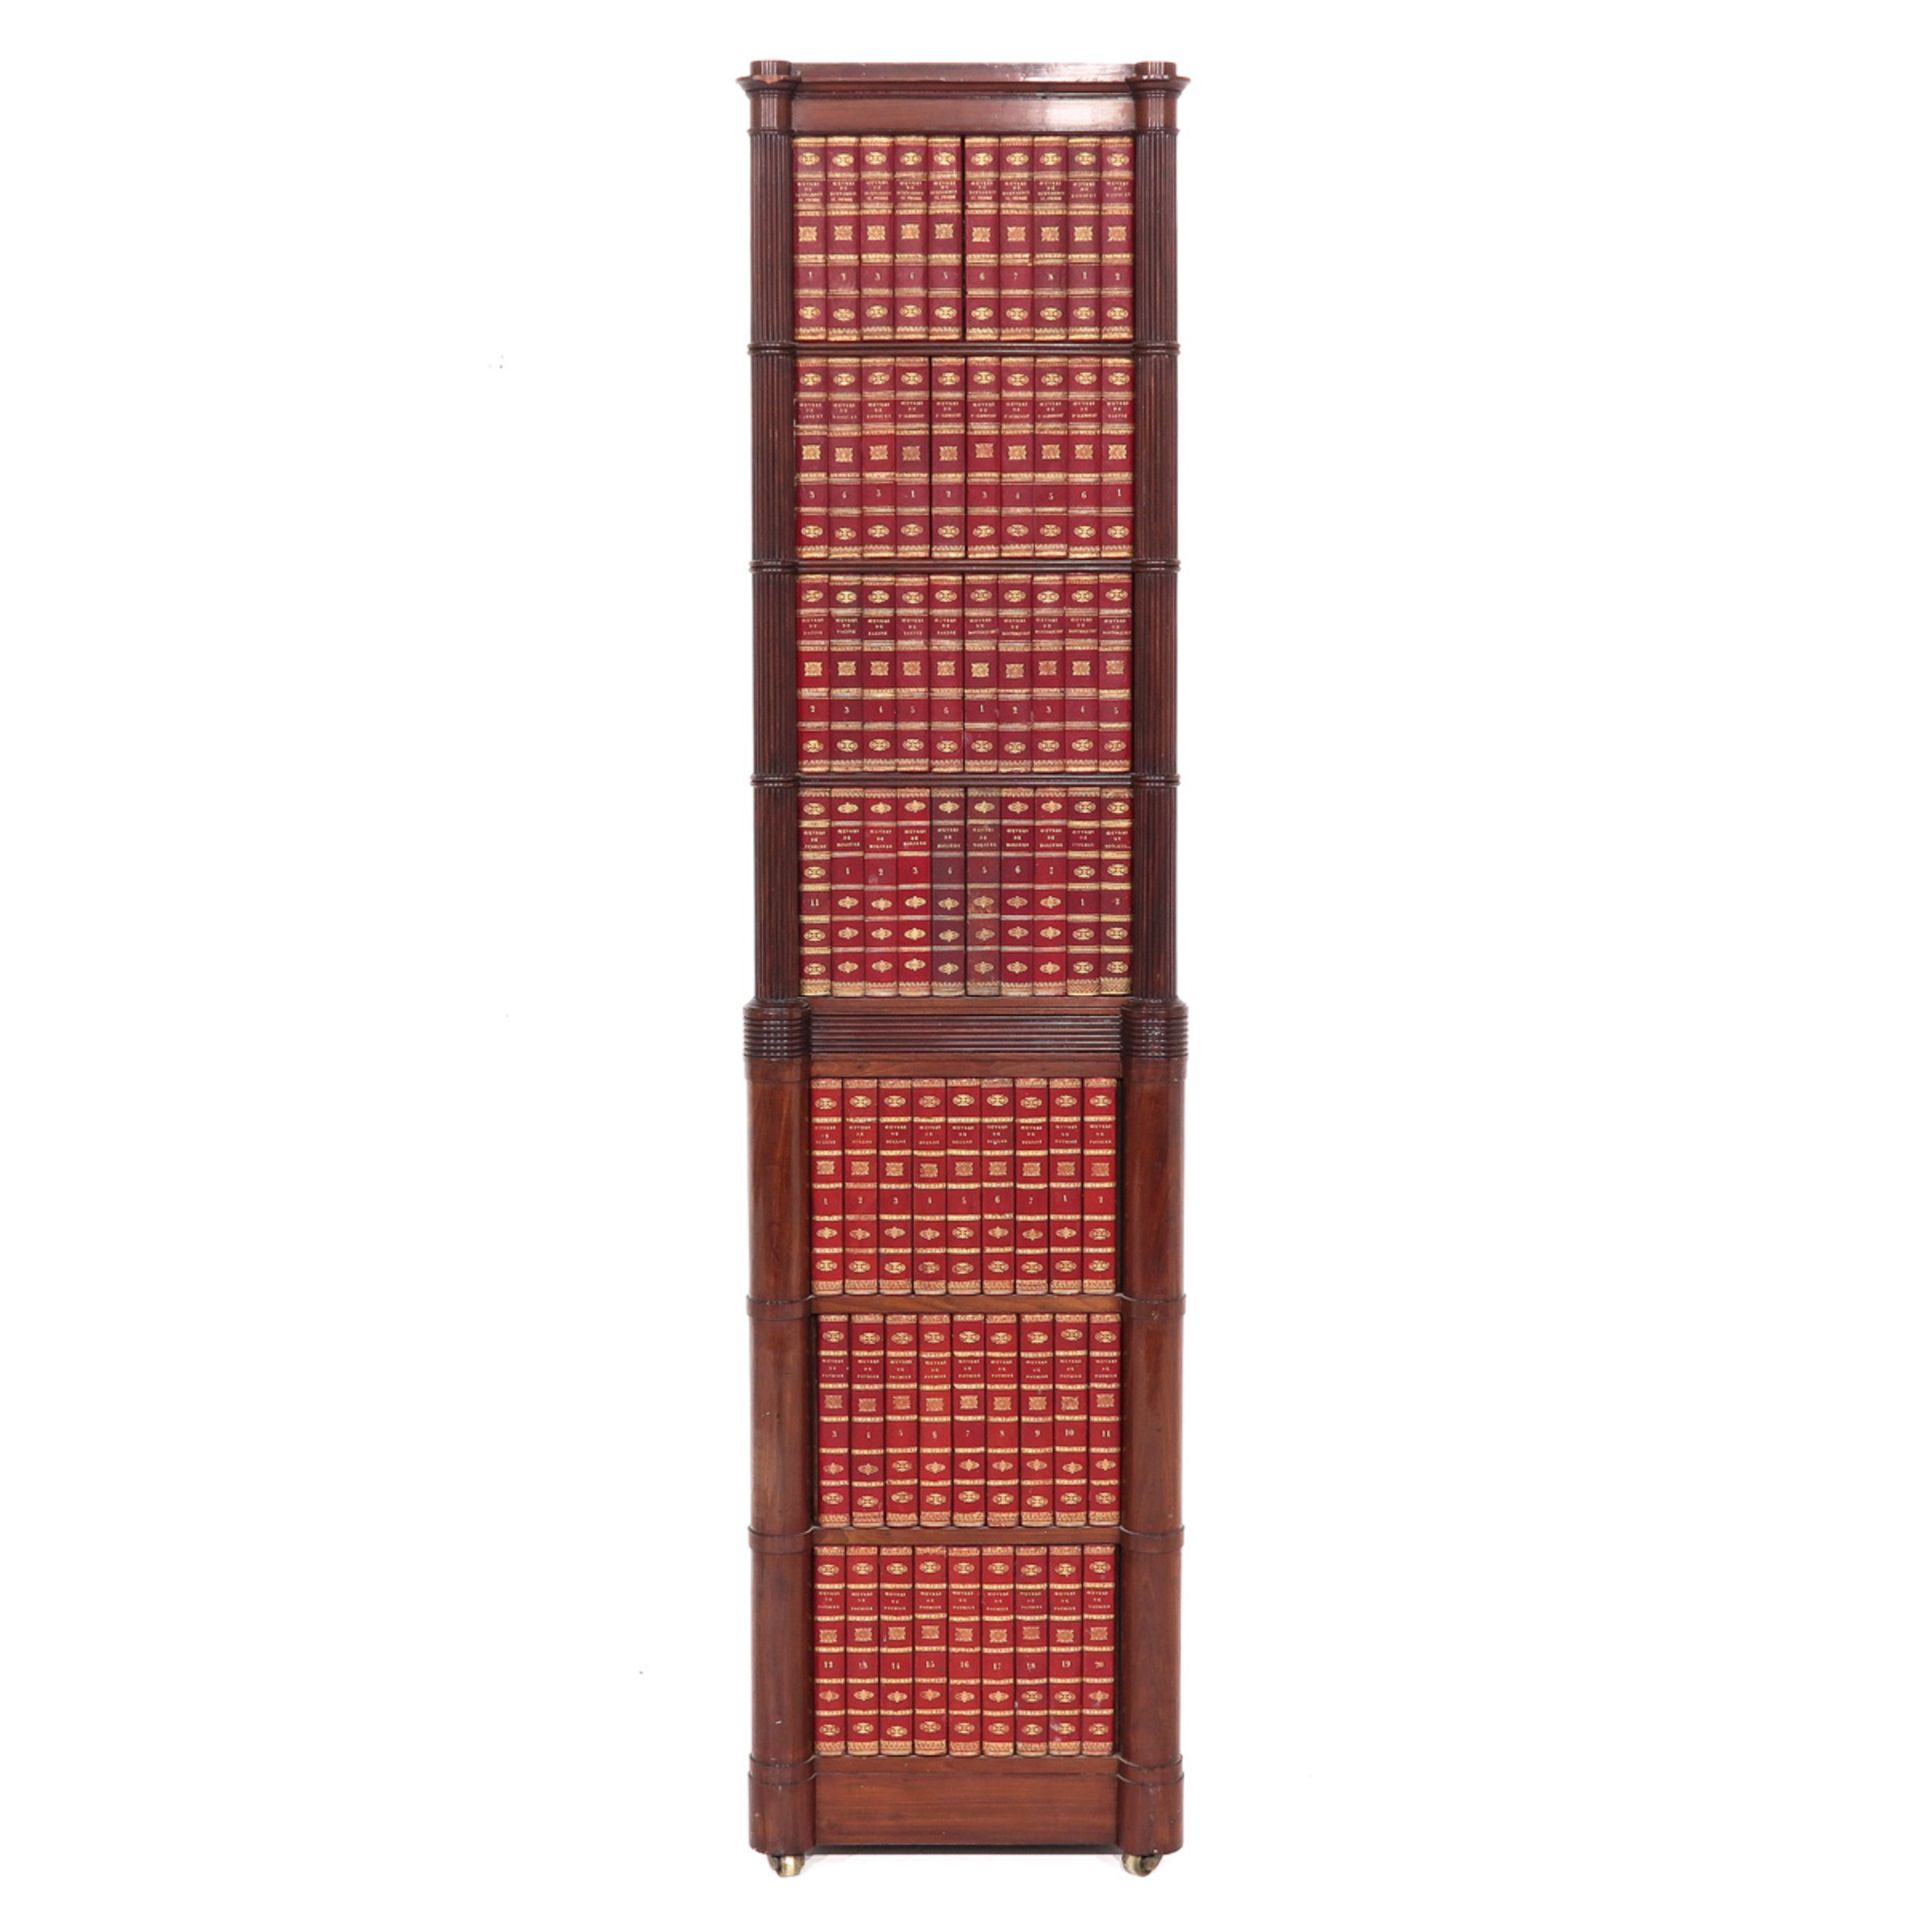 A Mahogany Bookcase - Image 4 of 10